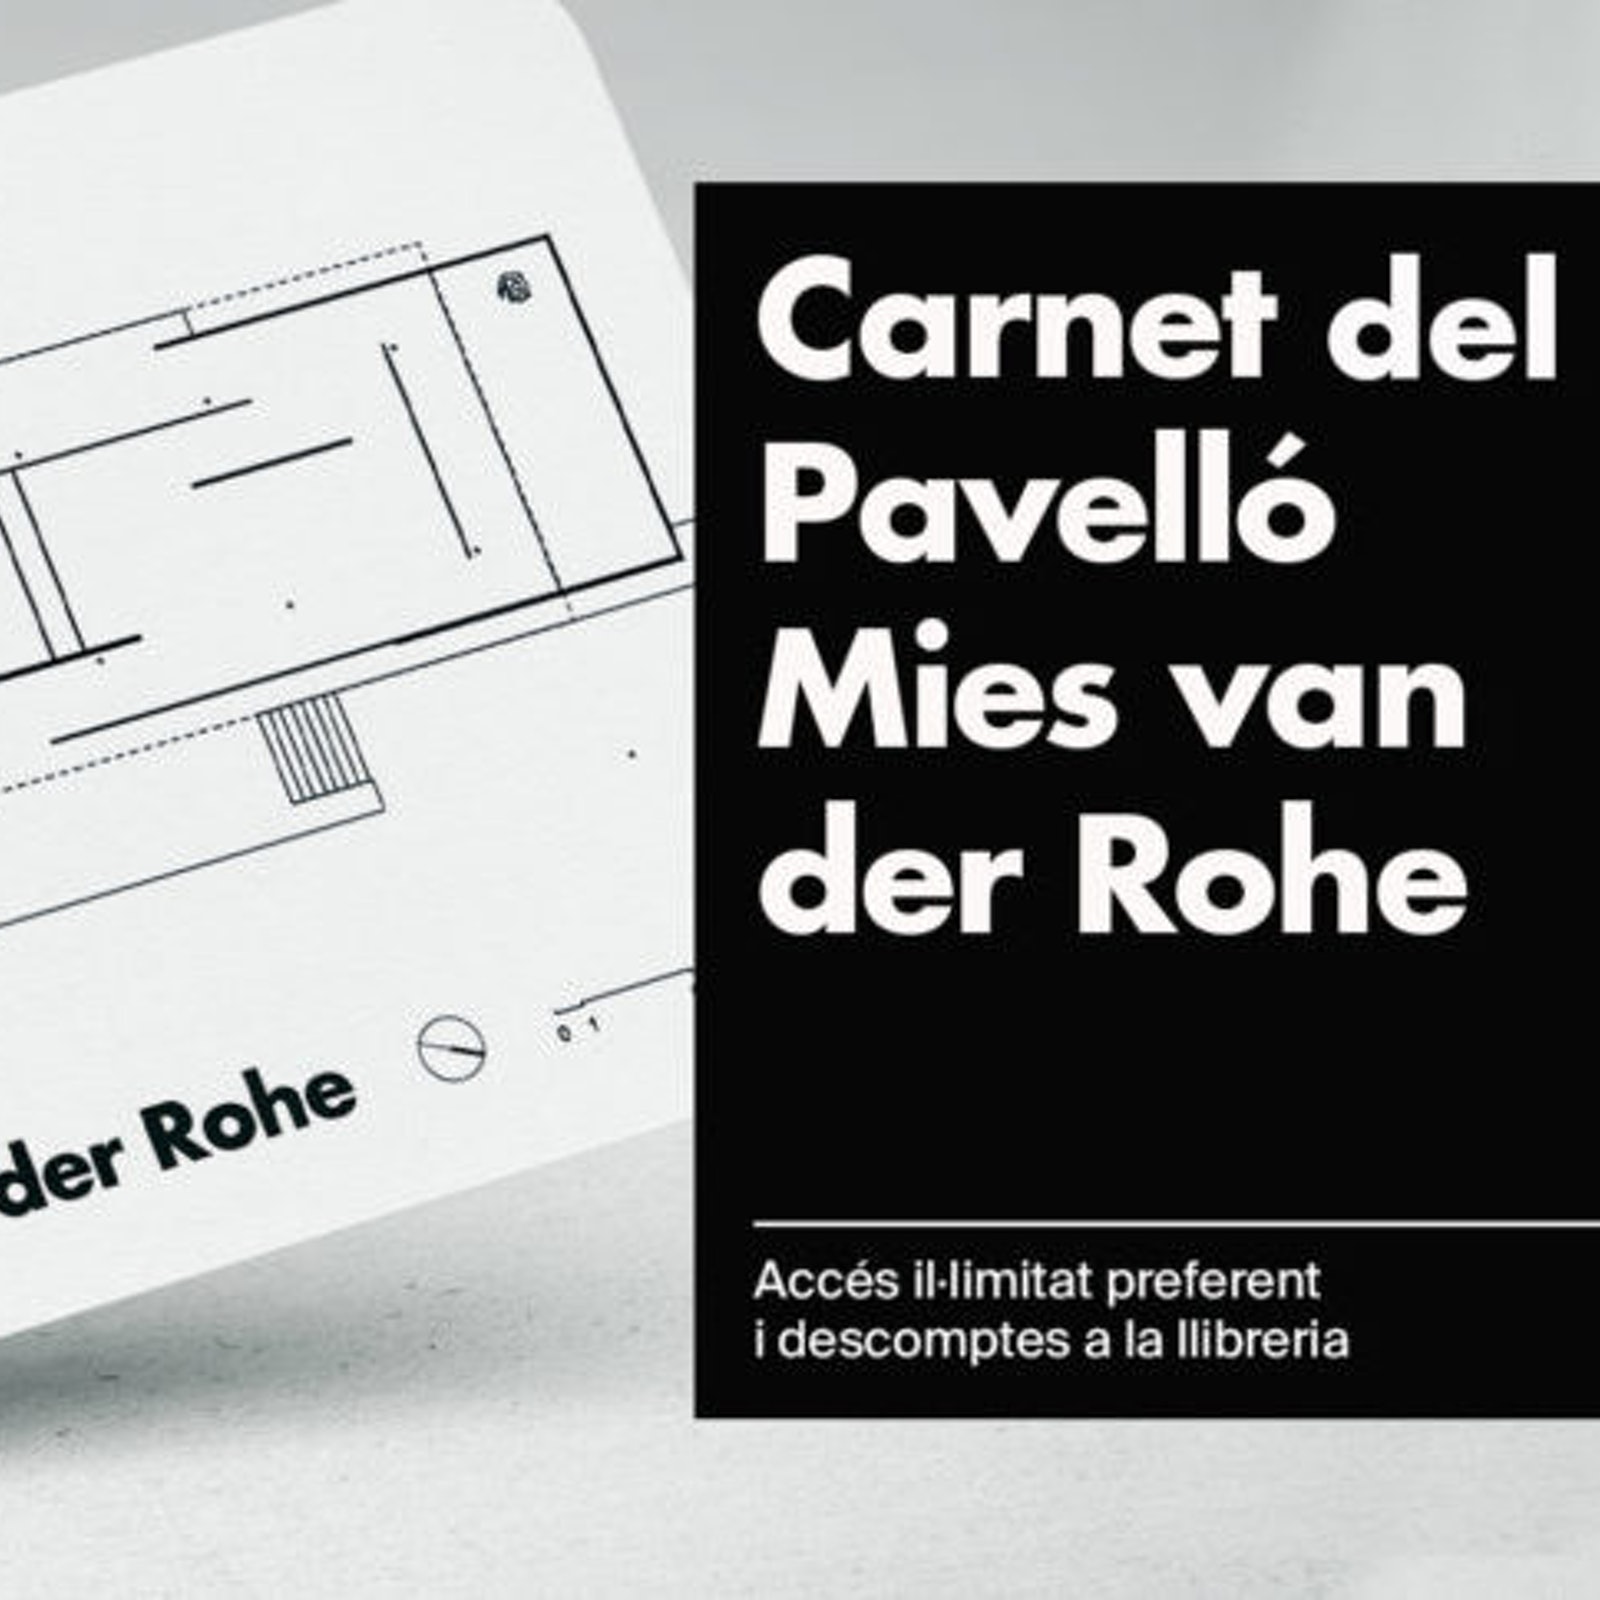 Mies van der Rohe Pavilion Card in Spain